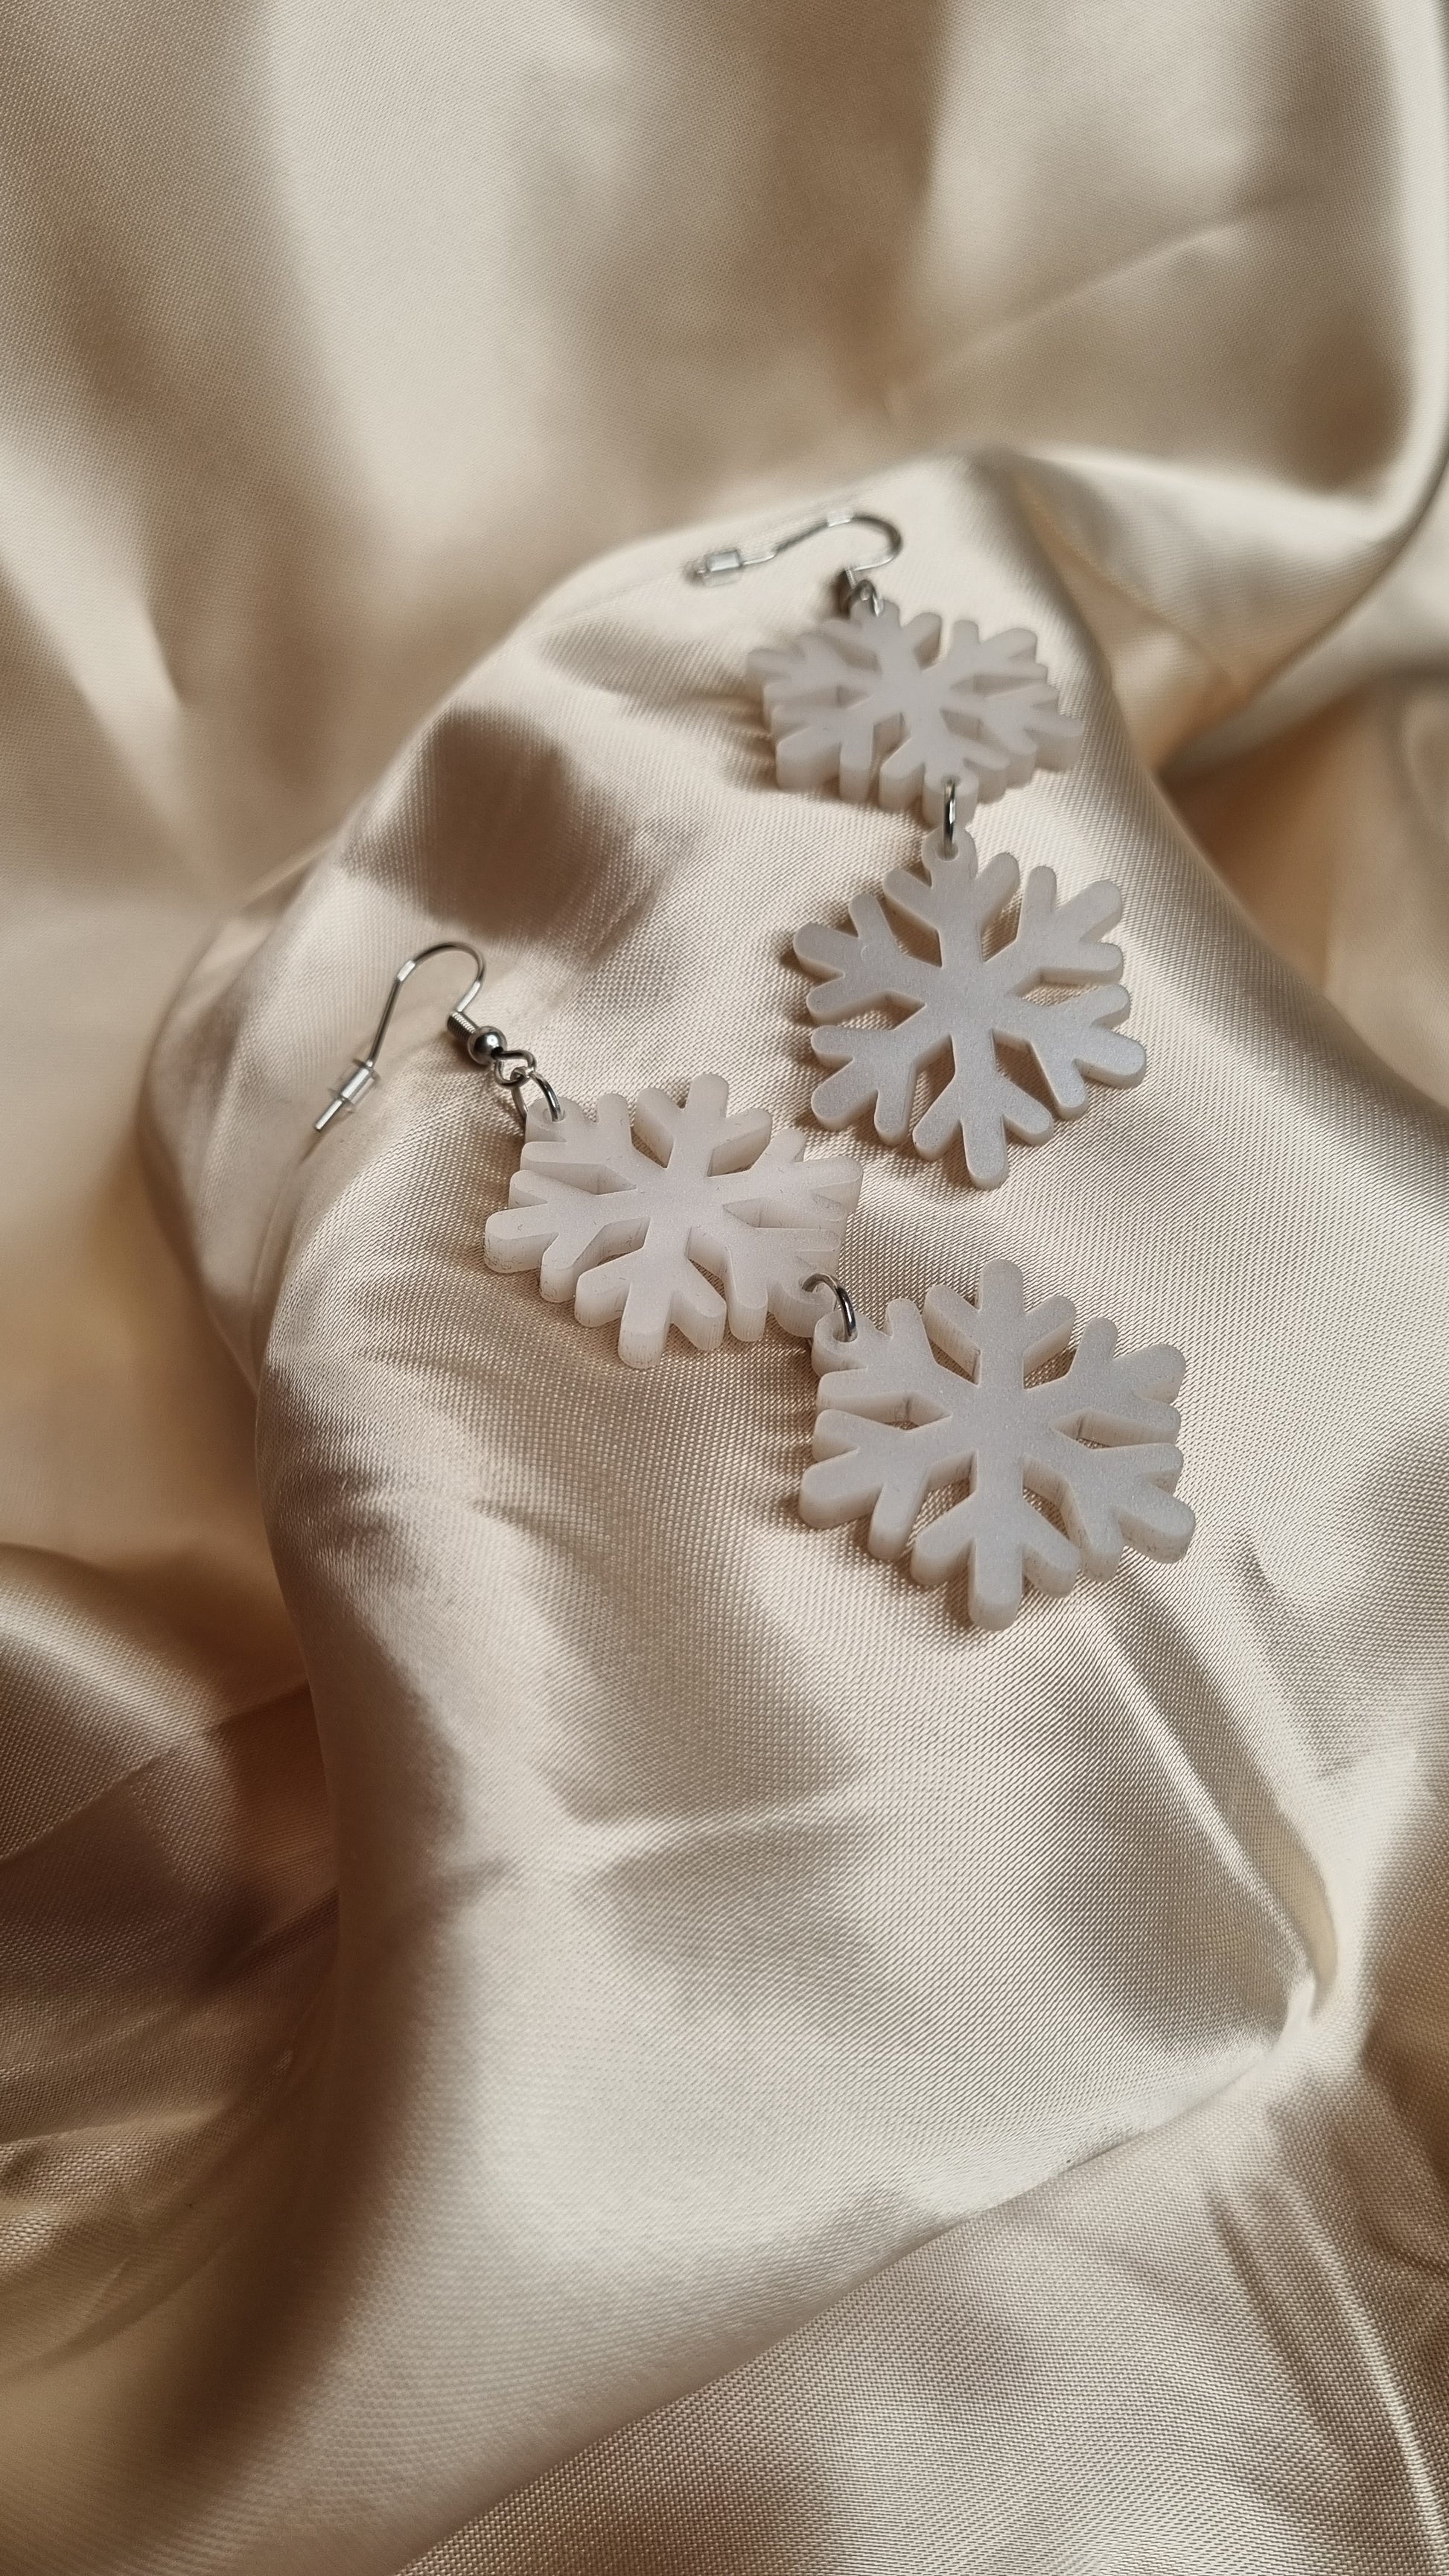 Kaksiosainen Lumi-korvakoru koukulla materiaalina helmiäisvalkoinen akryyli.